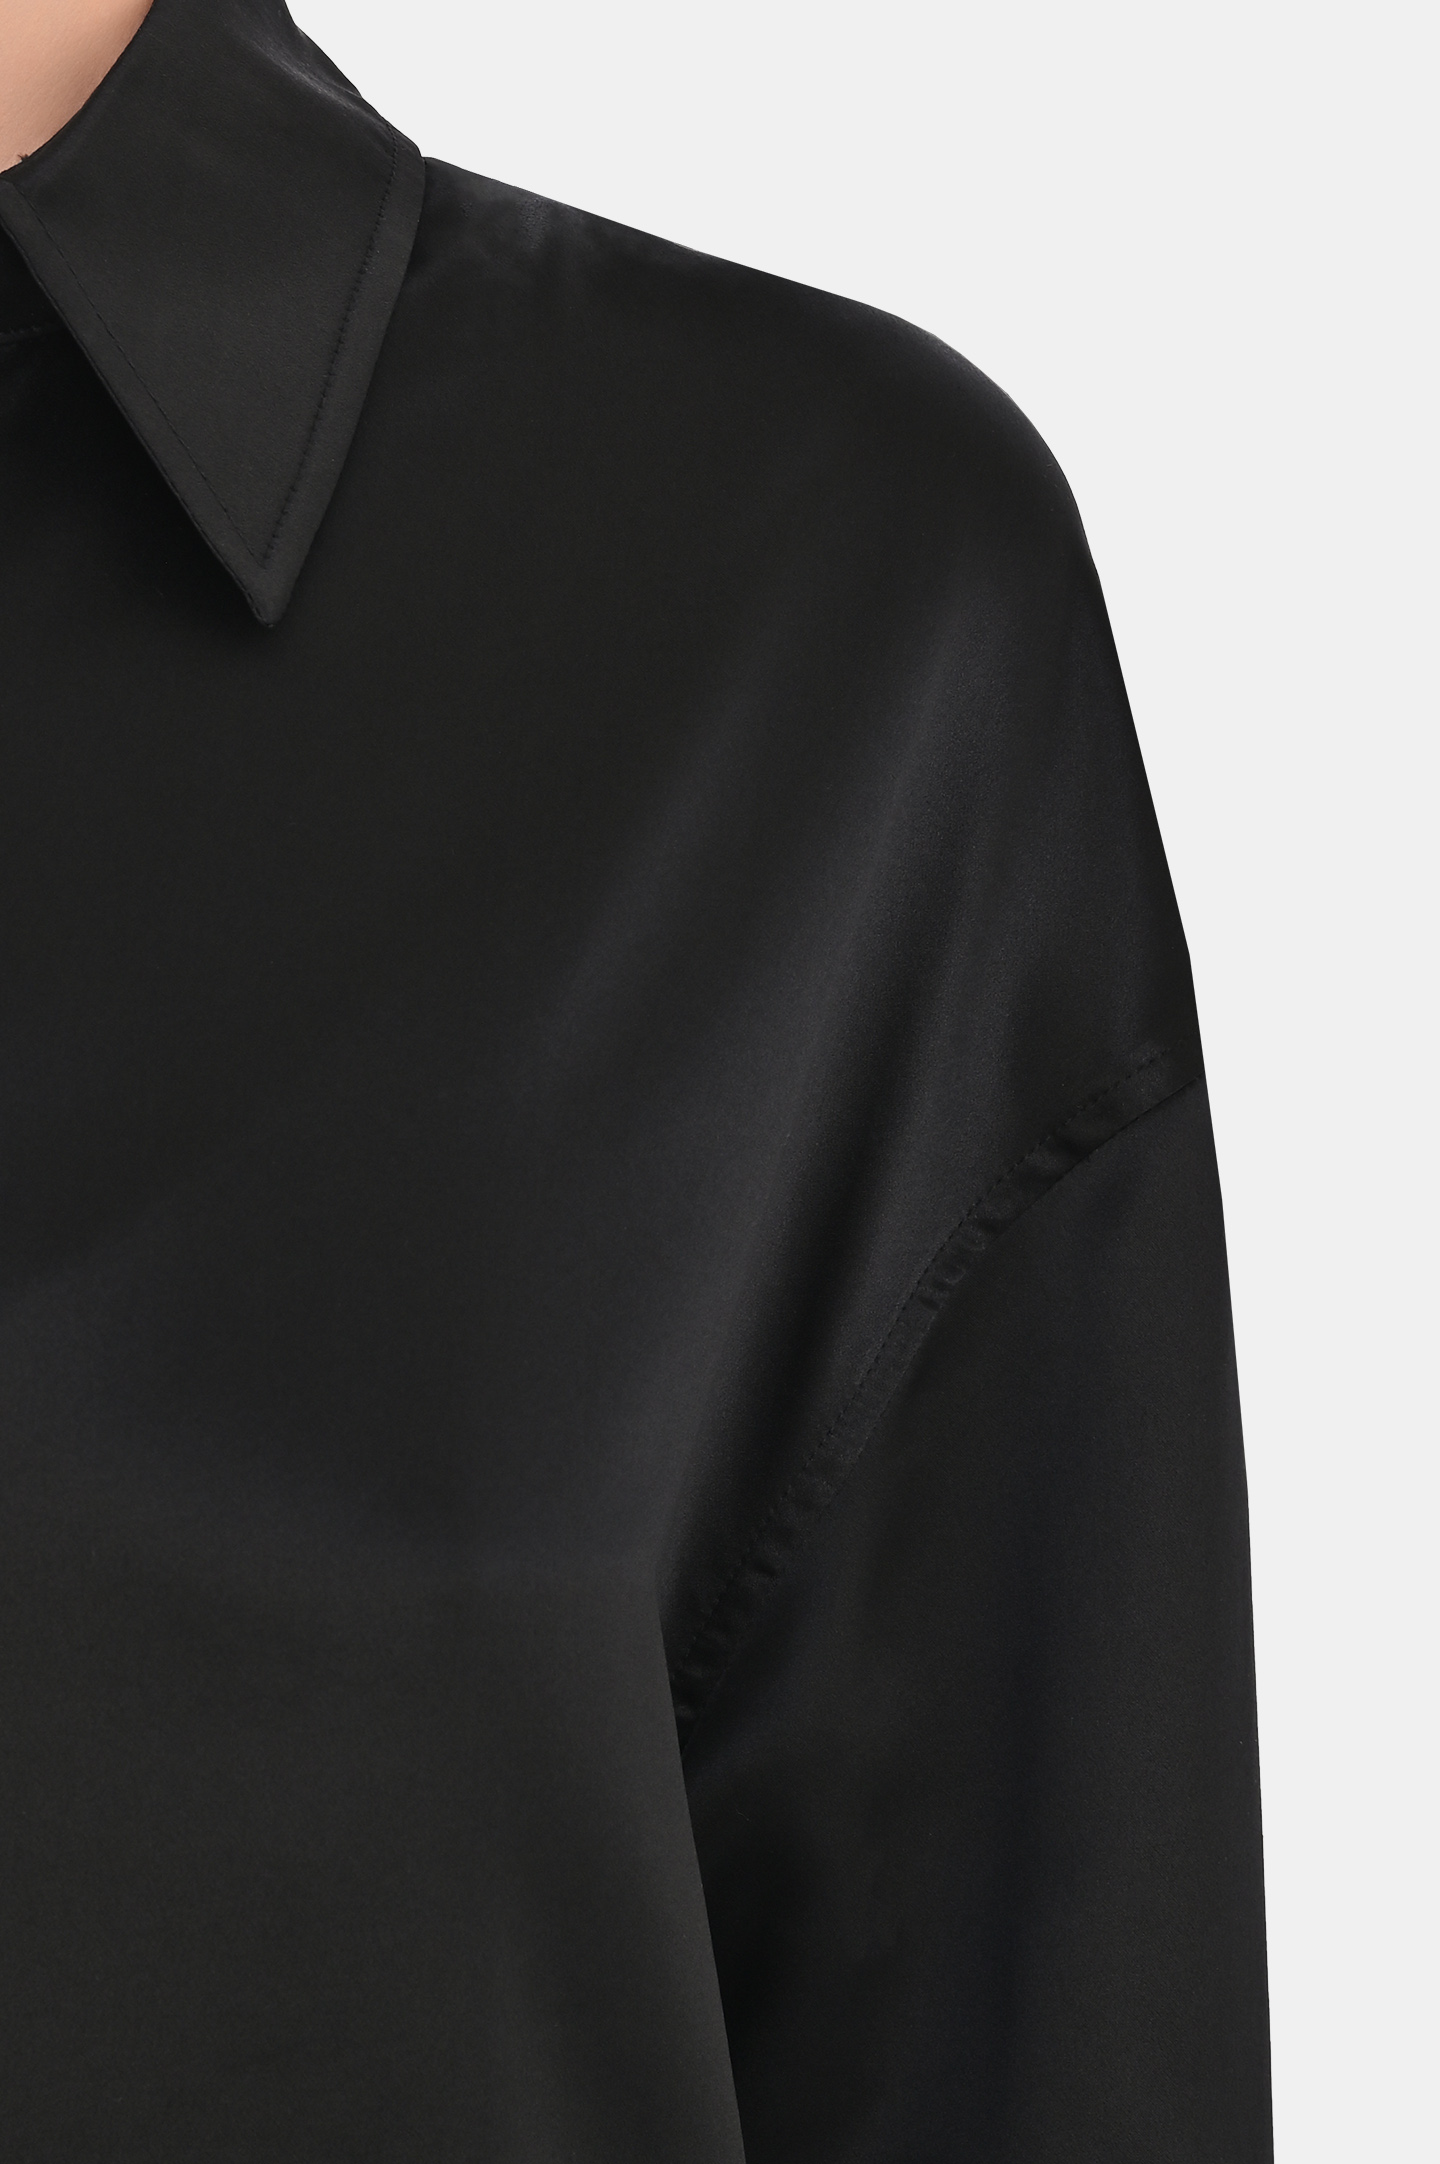 Блуза-рубашка из шелка JACOB LEE WSS016SS24B, цвет: Черный, Женский